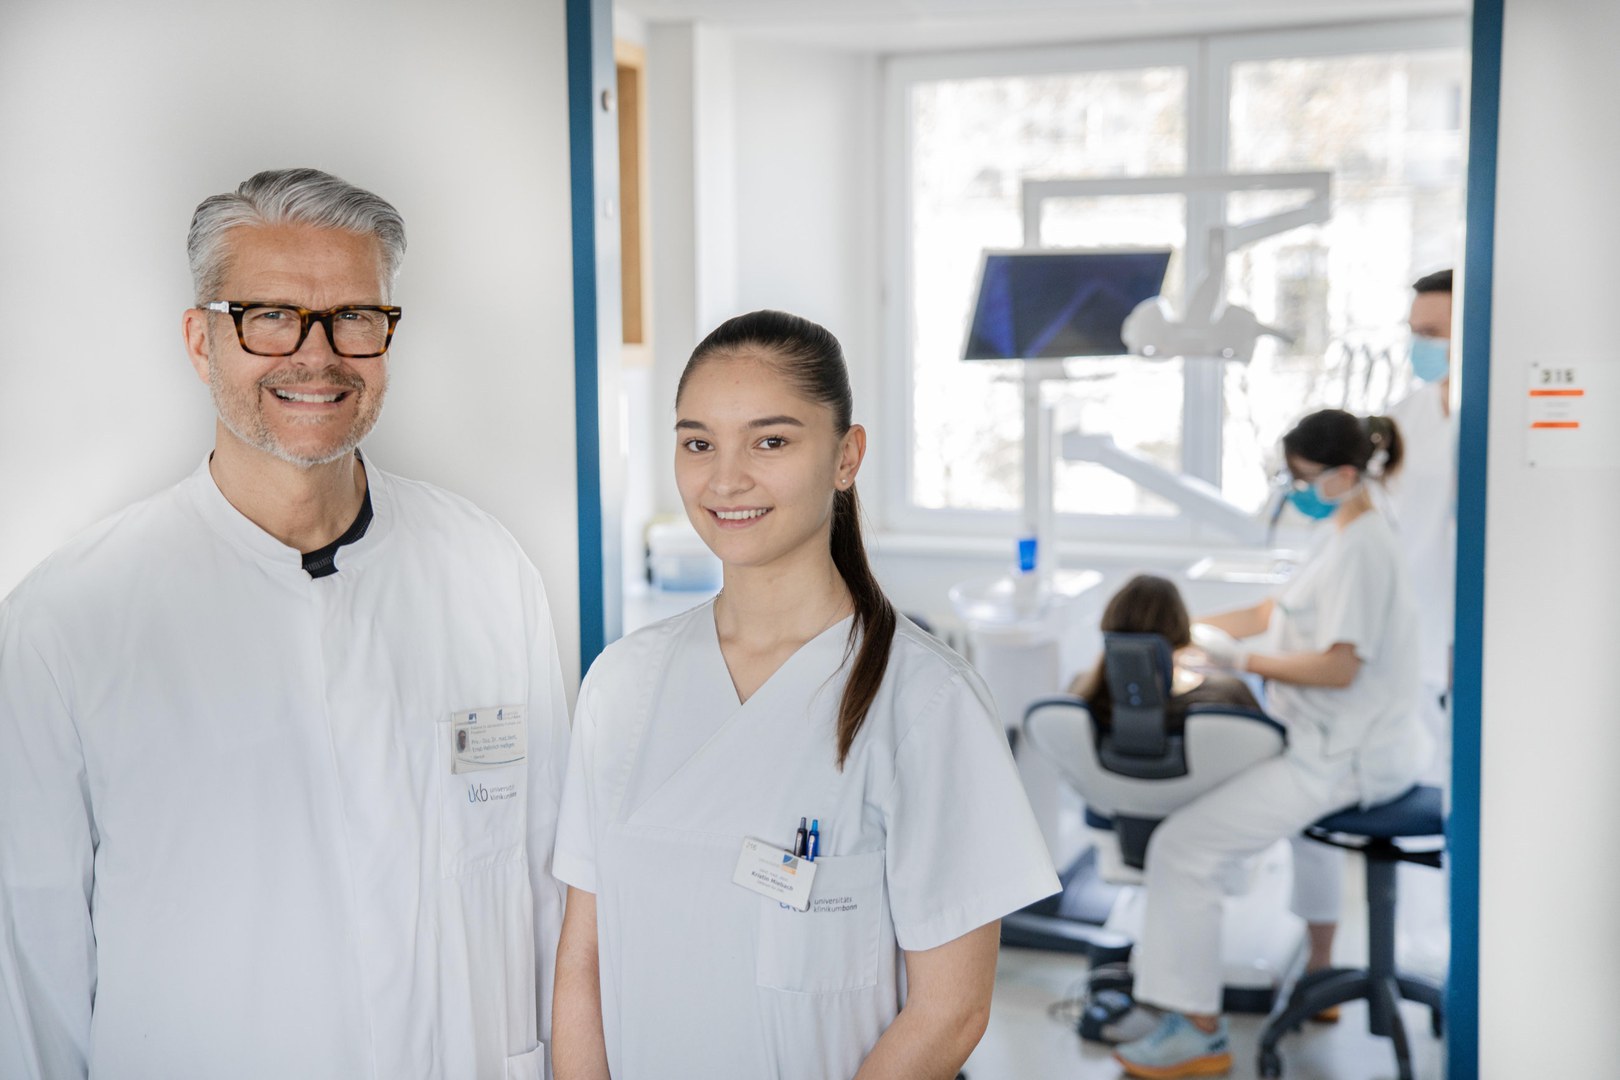 Zahnmedizinische Behandlung mit Qualitätskontrolle und individueller Betreuung: - Angehende Zahnärztinnen und -ärzte der Universität Bonn suchen jüngere und ältere Patientinnen und Patienten für ihre Behandlungskurse in der Zahnklinik des Universitätsklinikums Bonn.